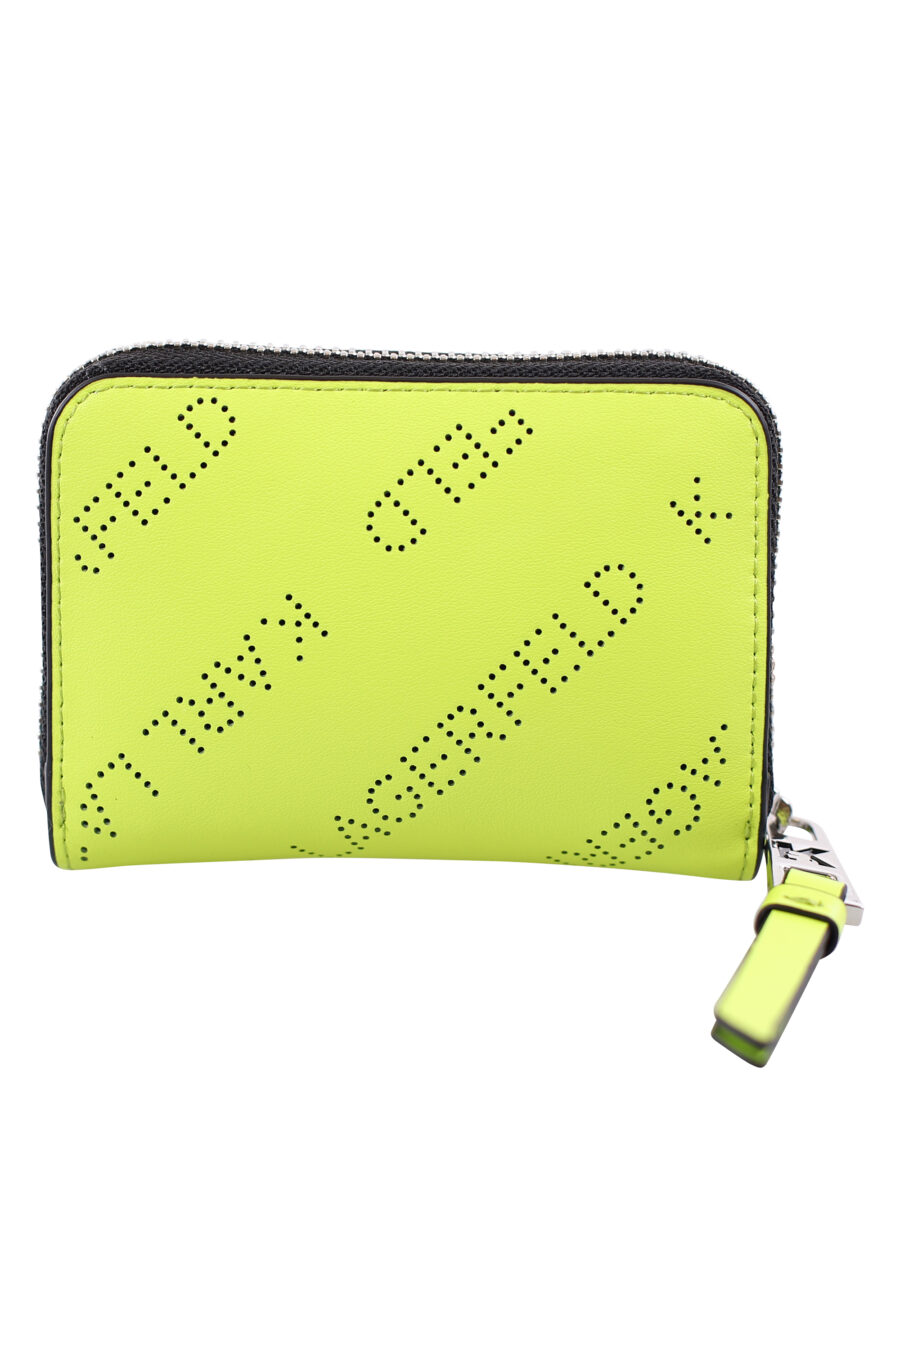 Petit portefeuille vert citron avec logo perforé et fermeture éclair - IMG 1816